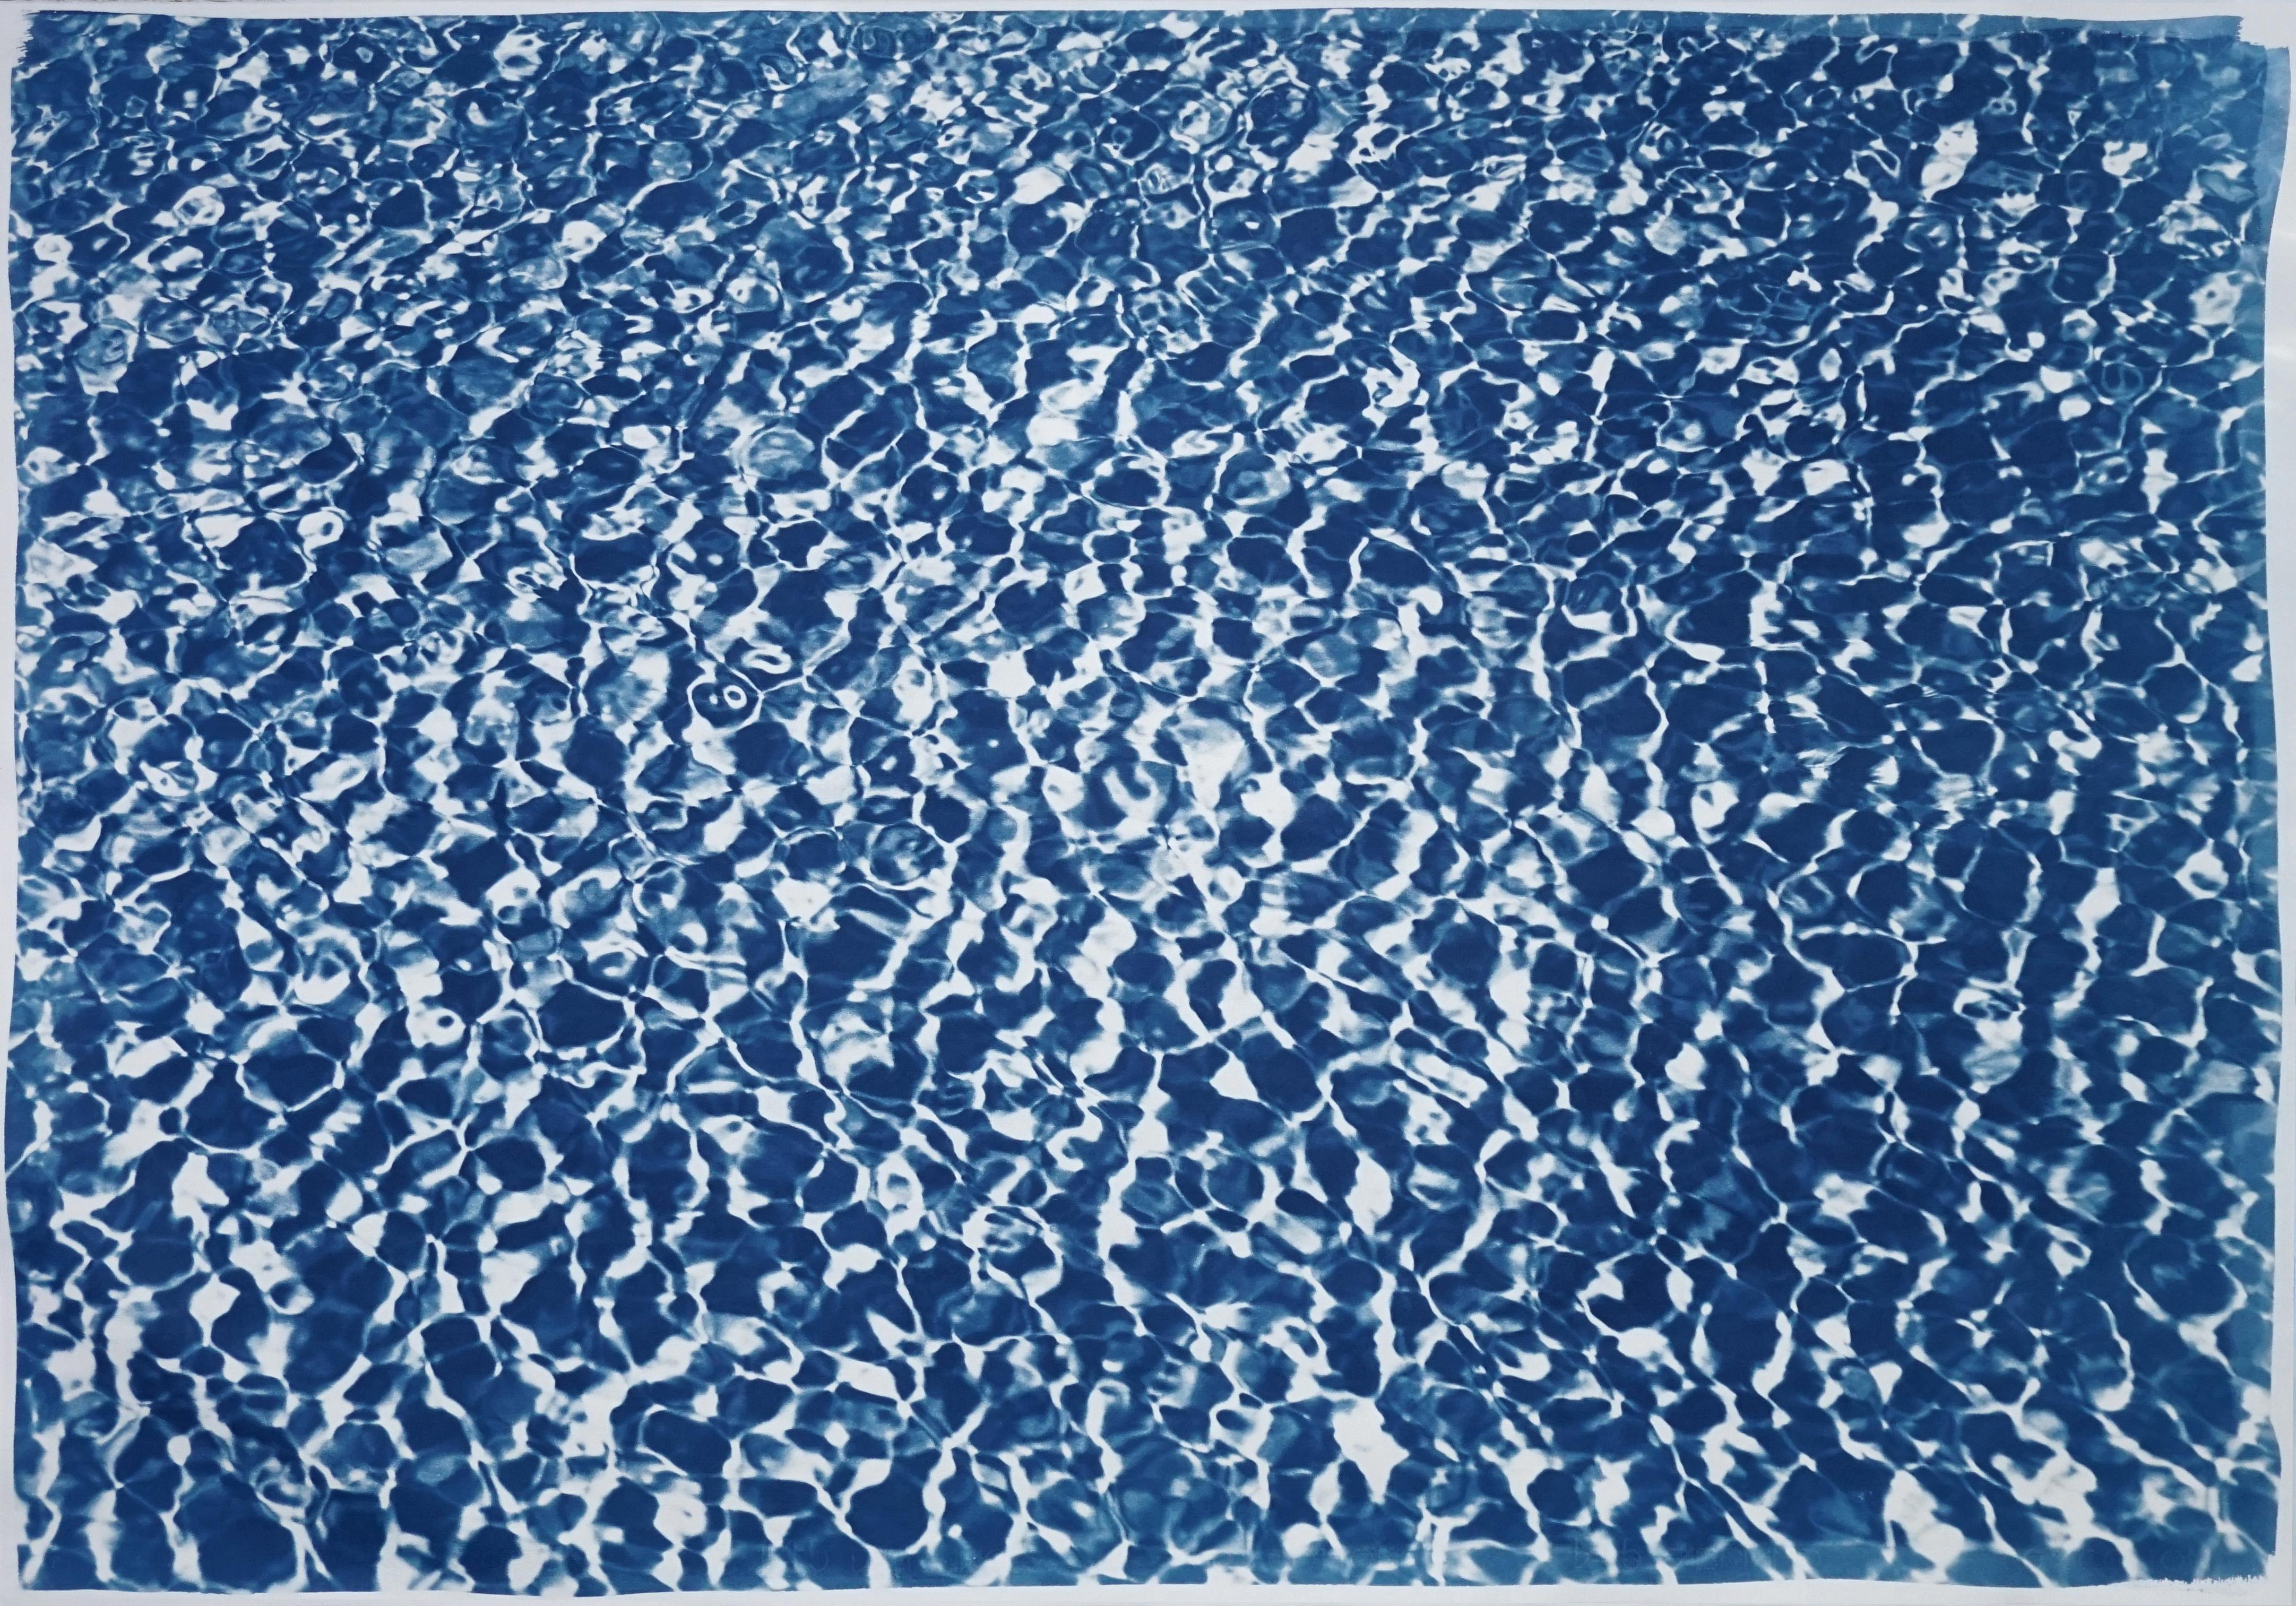 Unendliches Pool-Wasserreflexionen, blau-weißes Muster, handgefertigter Zyanotyp-Druck